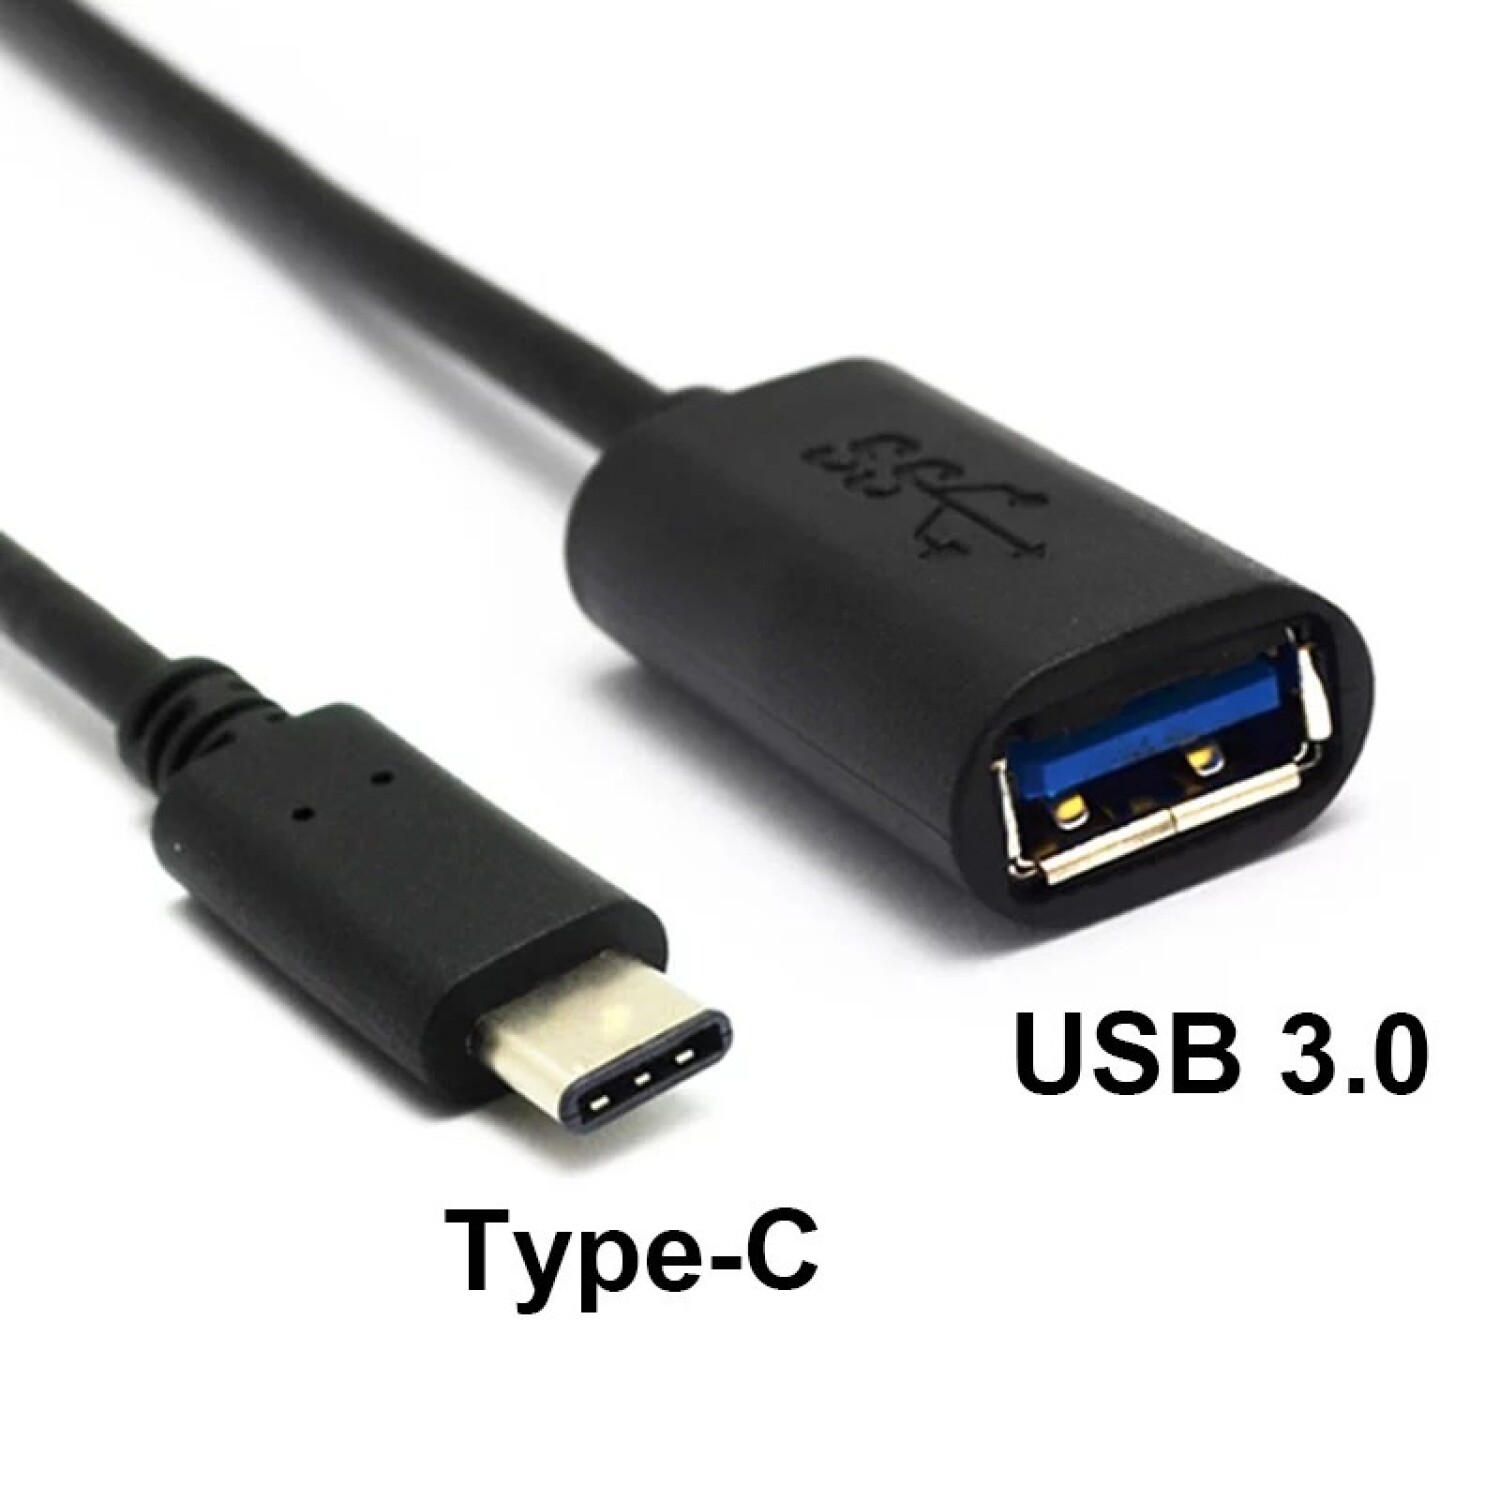 Adaptador Tipo C a USB A 3.1 OTG